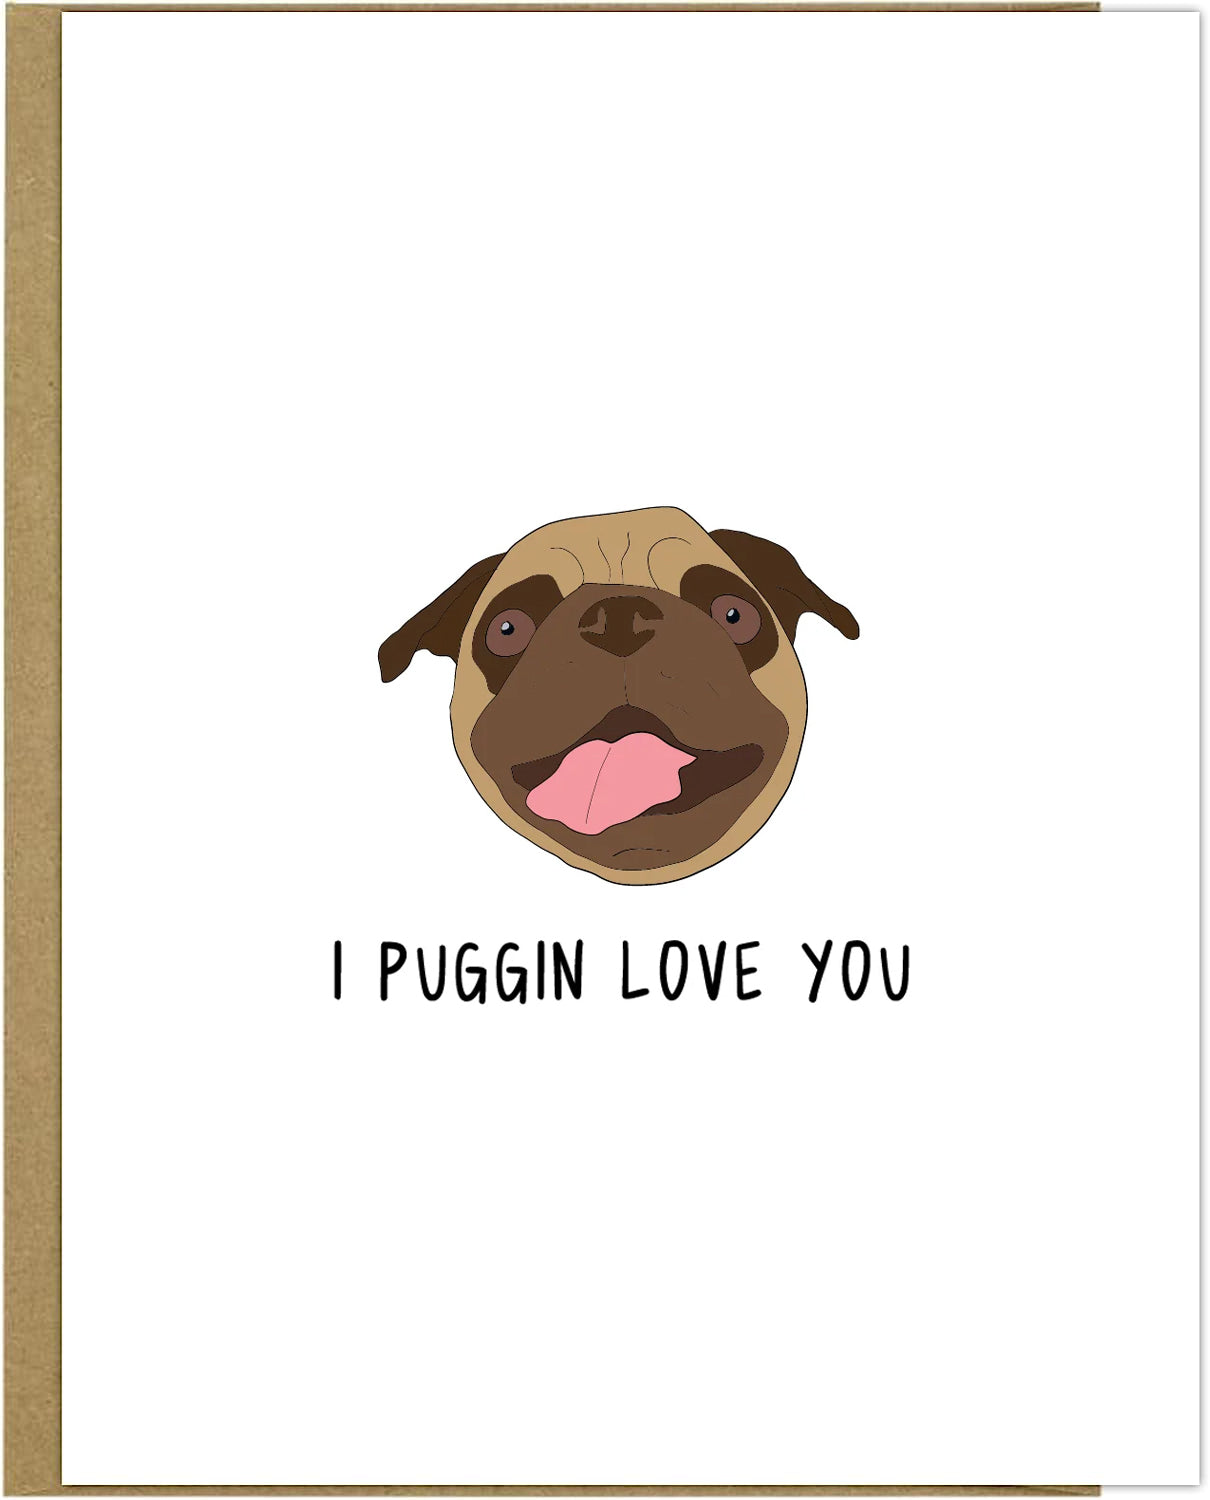 Puggin Love You Card